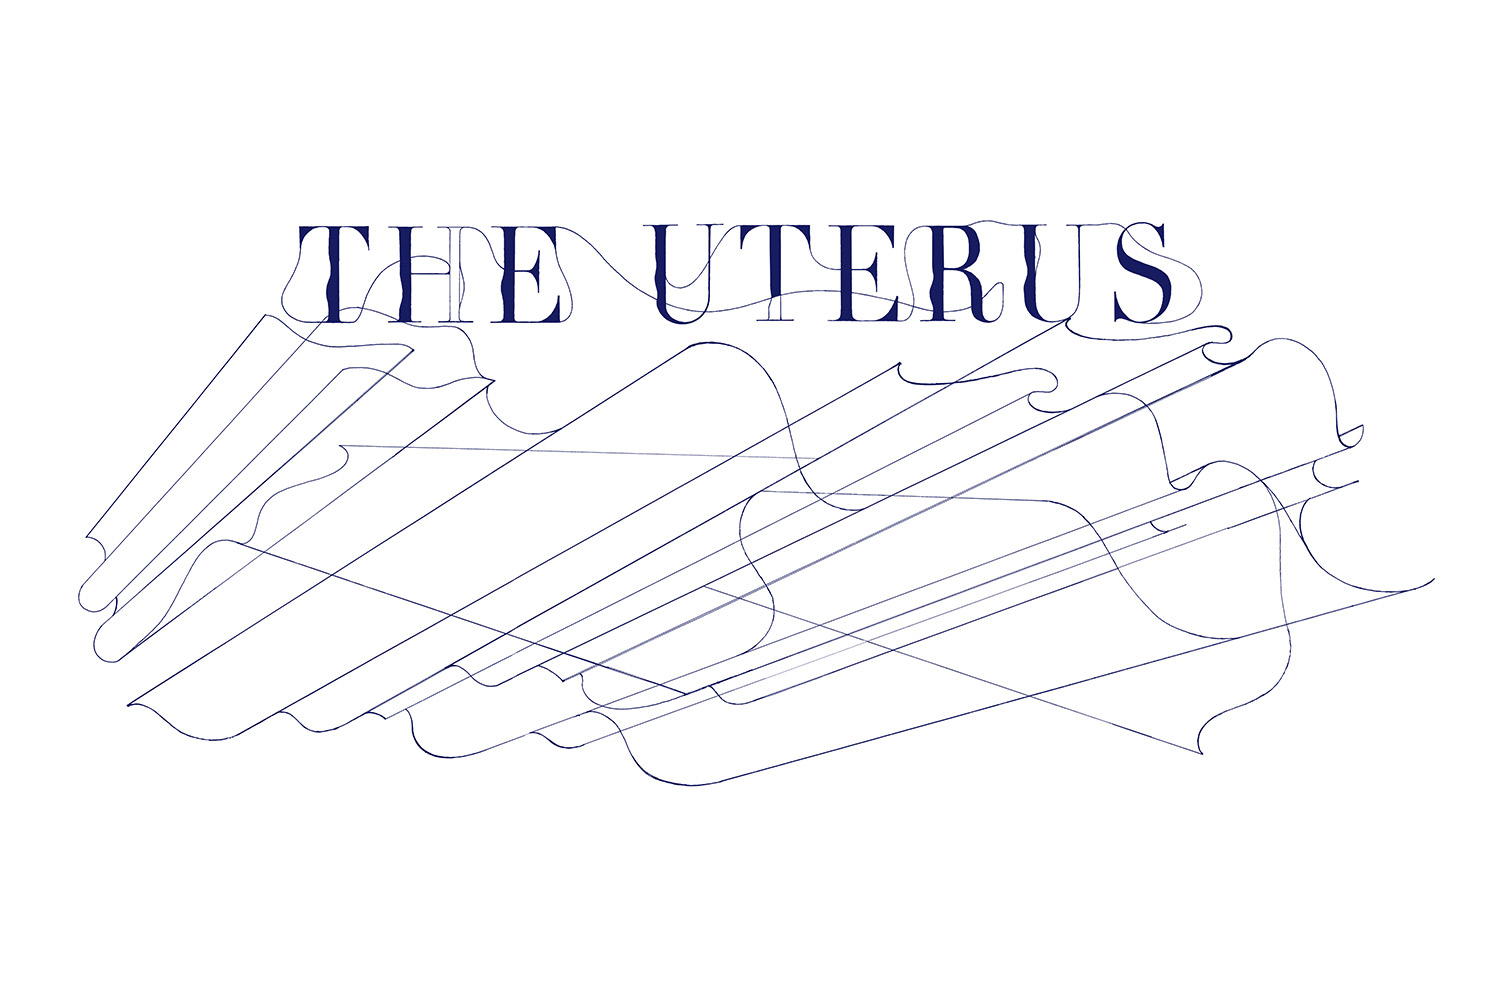 THE UTERUS